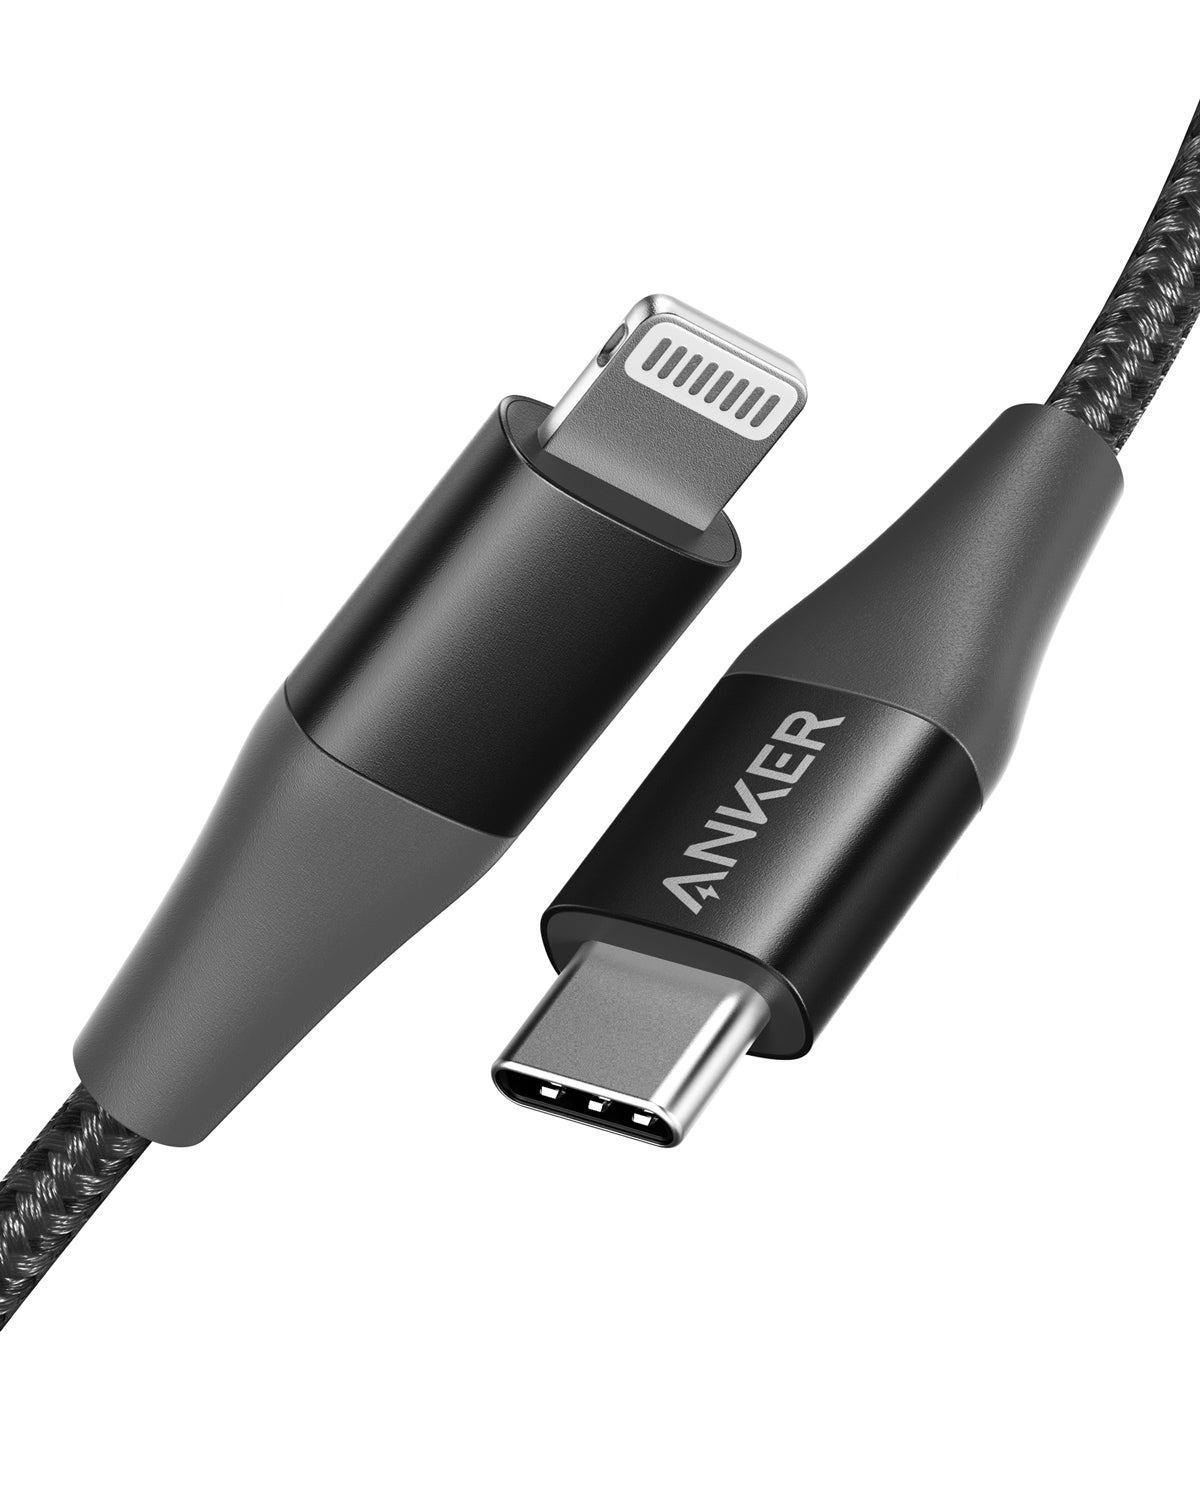 USB C Lightning Cable Apple Mfi - US